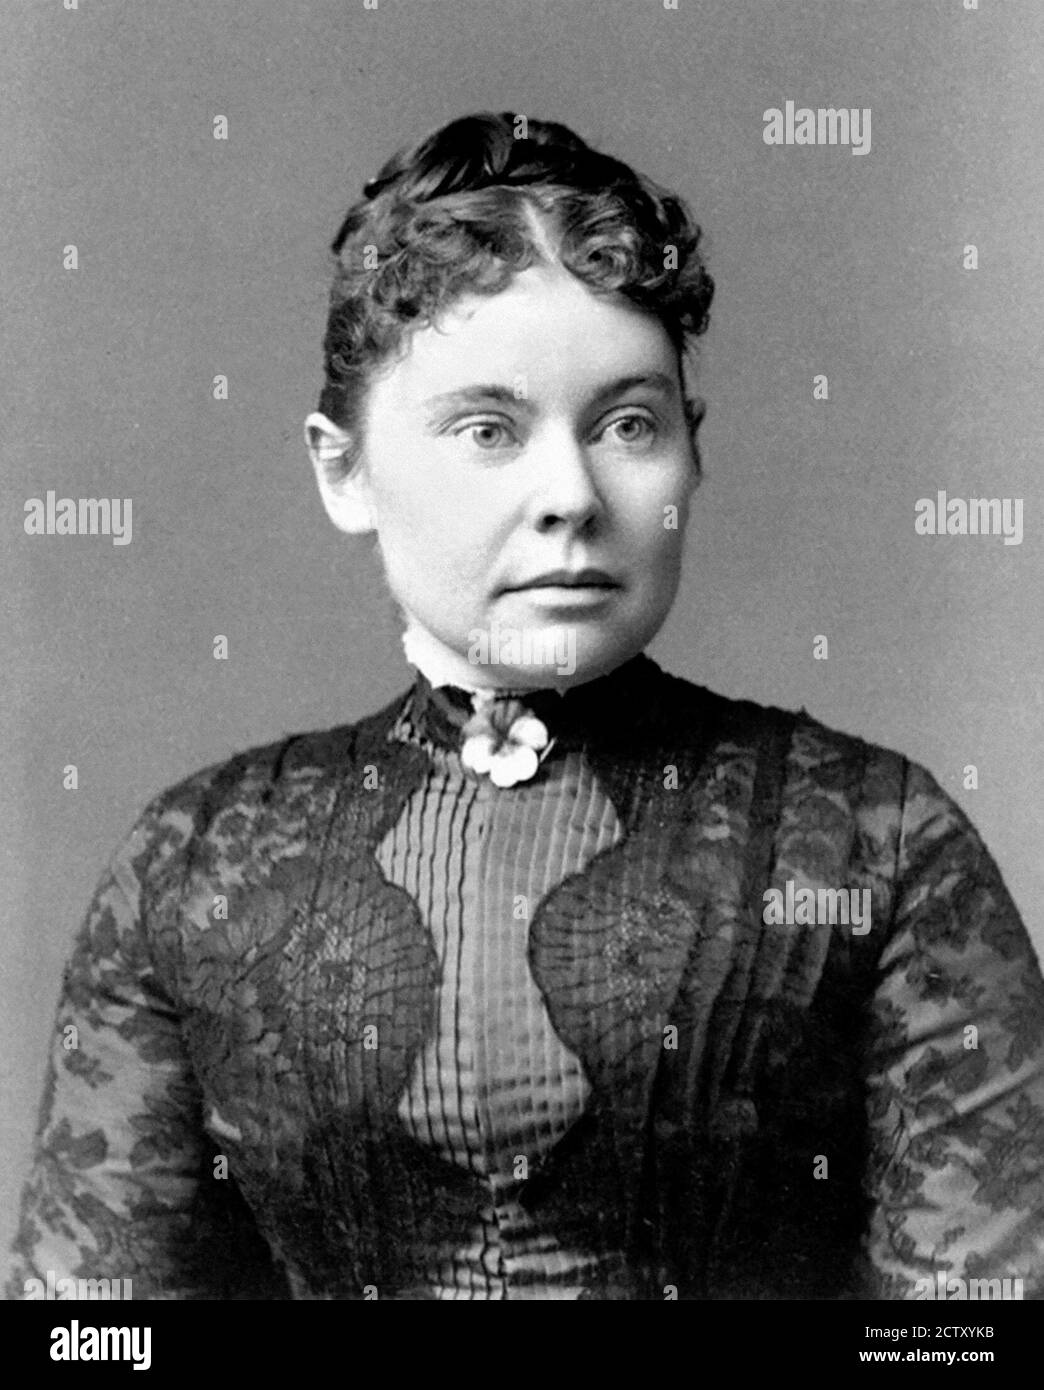 Lizzie Borden. Retrato de de Lizzie Andrew Borden (1860-1927), c.1890. Borden fue acusado y absuelto del asesinato hacha de su padre y madrastra. Foto de stock